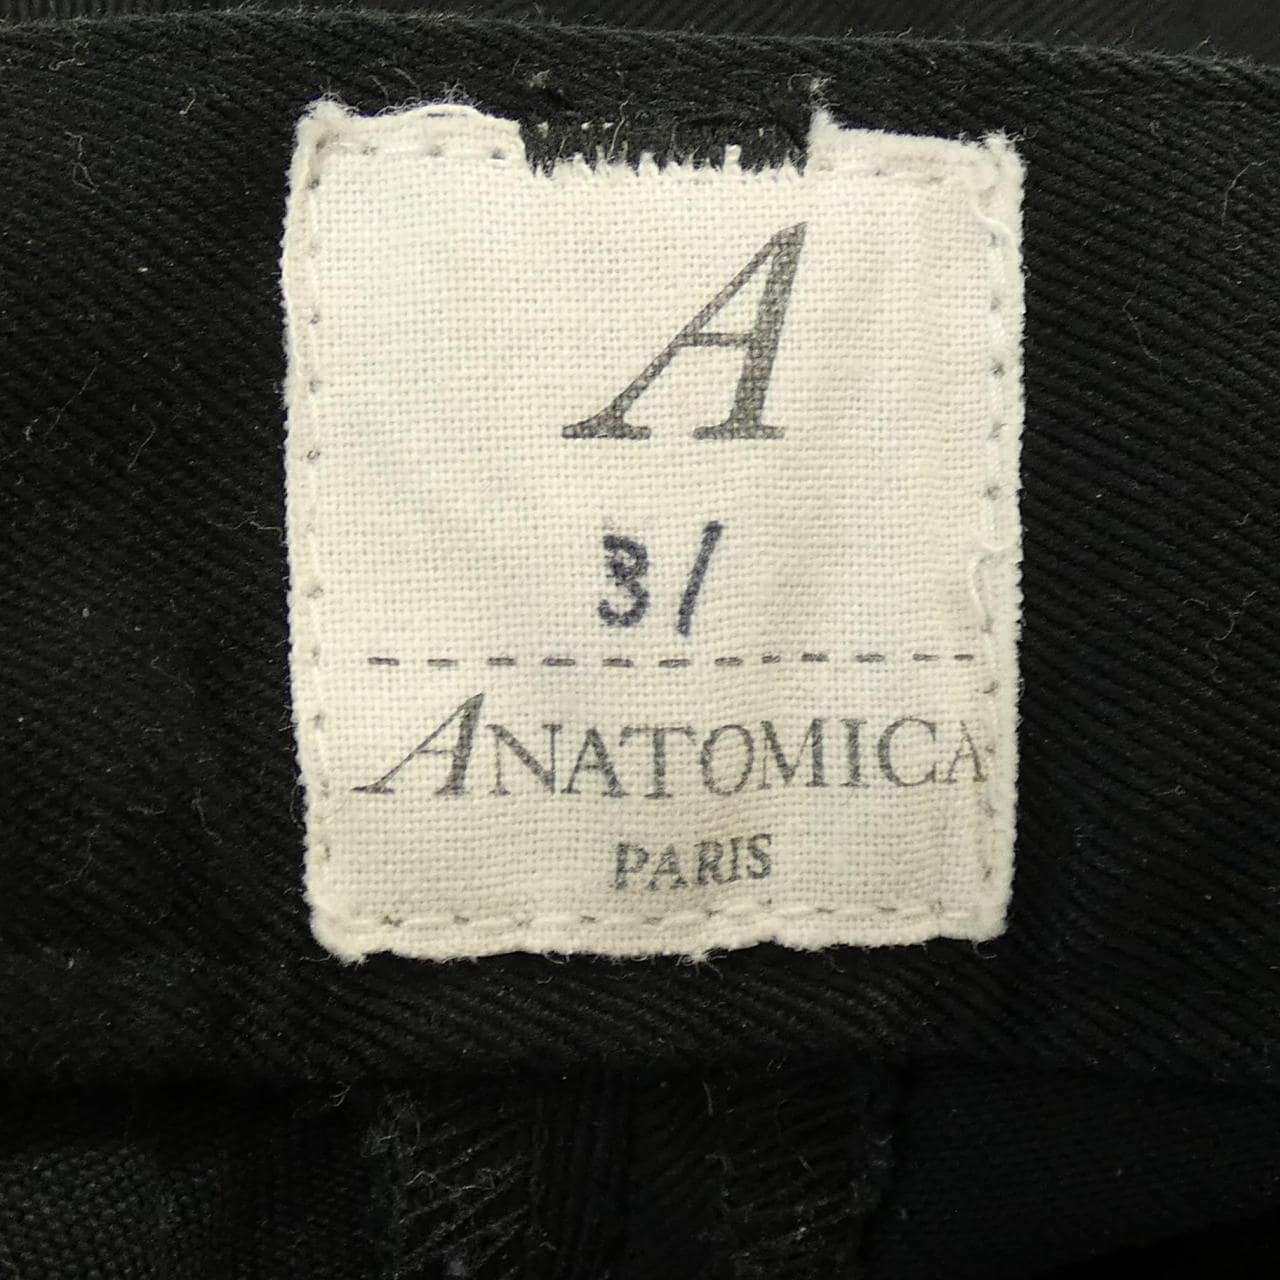 アナトミカ ANATOMICA パンツ